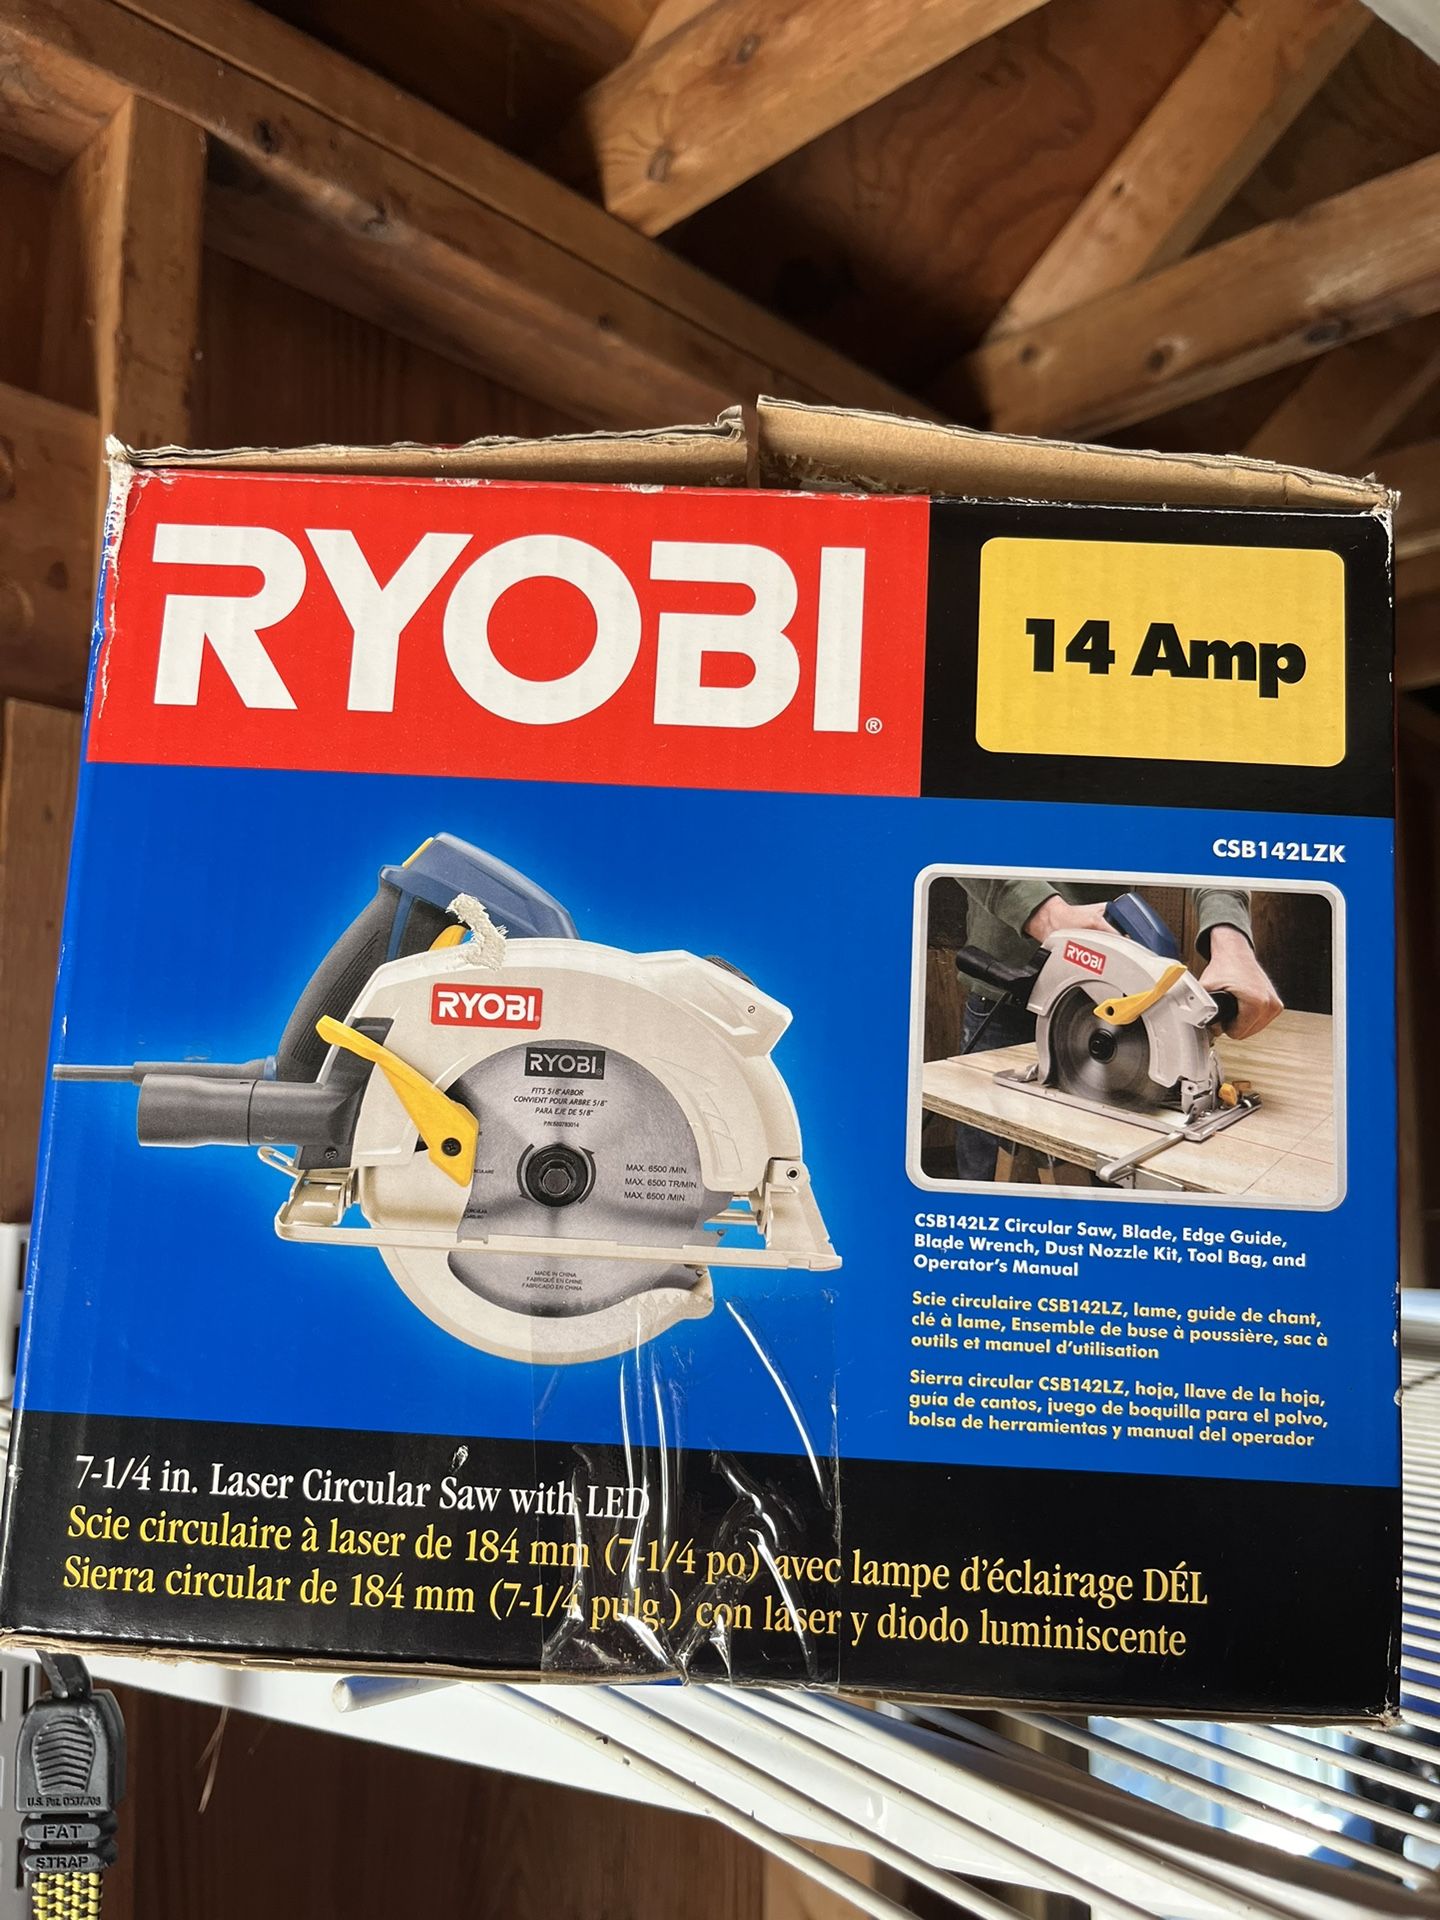 Ryobi 14” Circular Saw - Never used